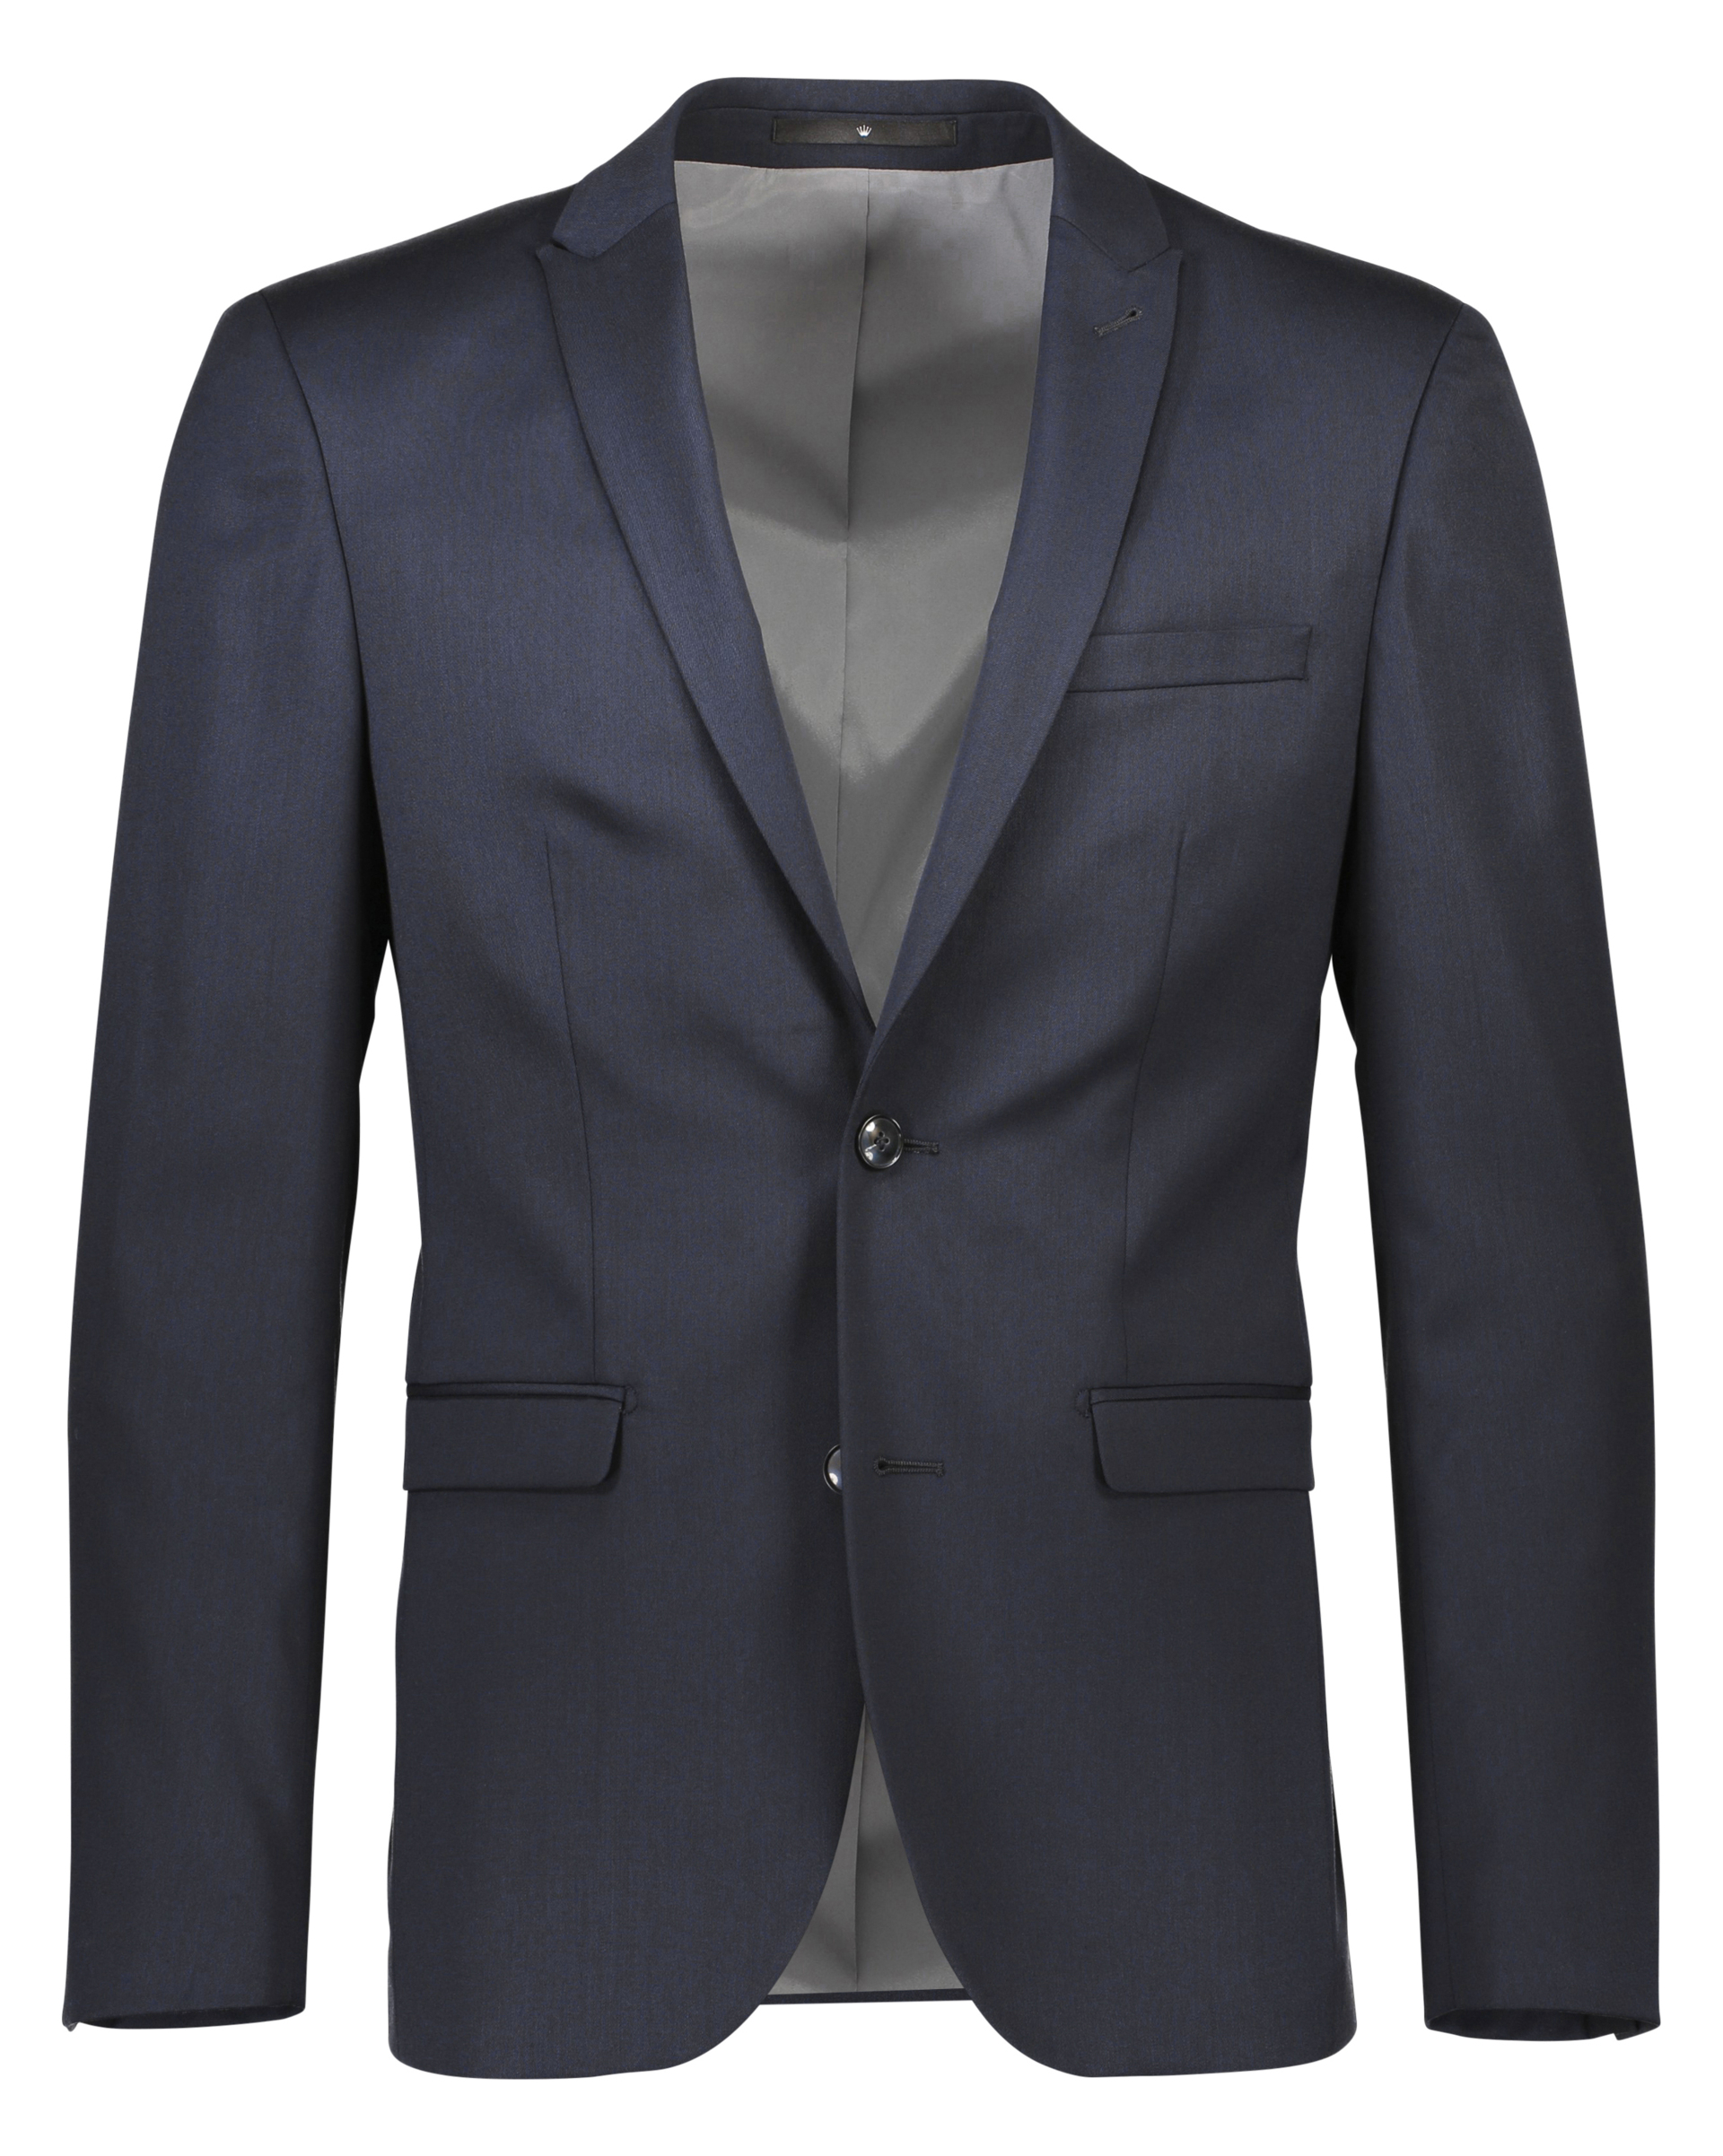 Junk de Luxe Suit jacket blue / navy